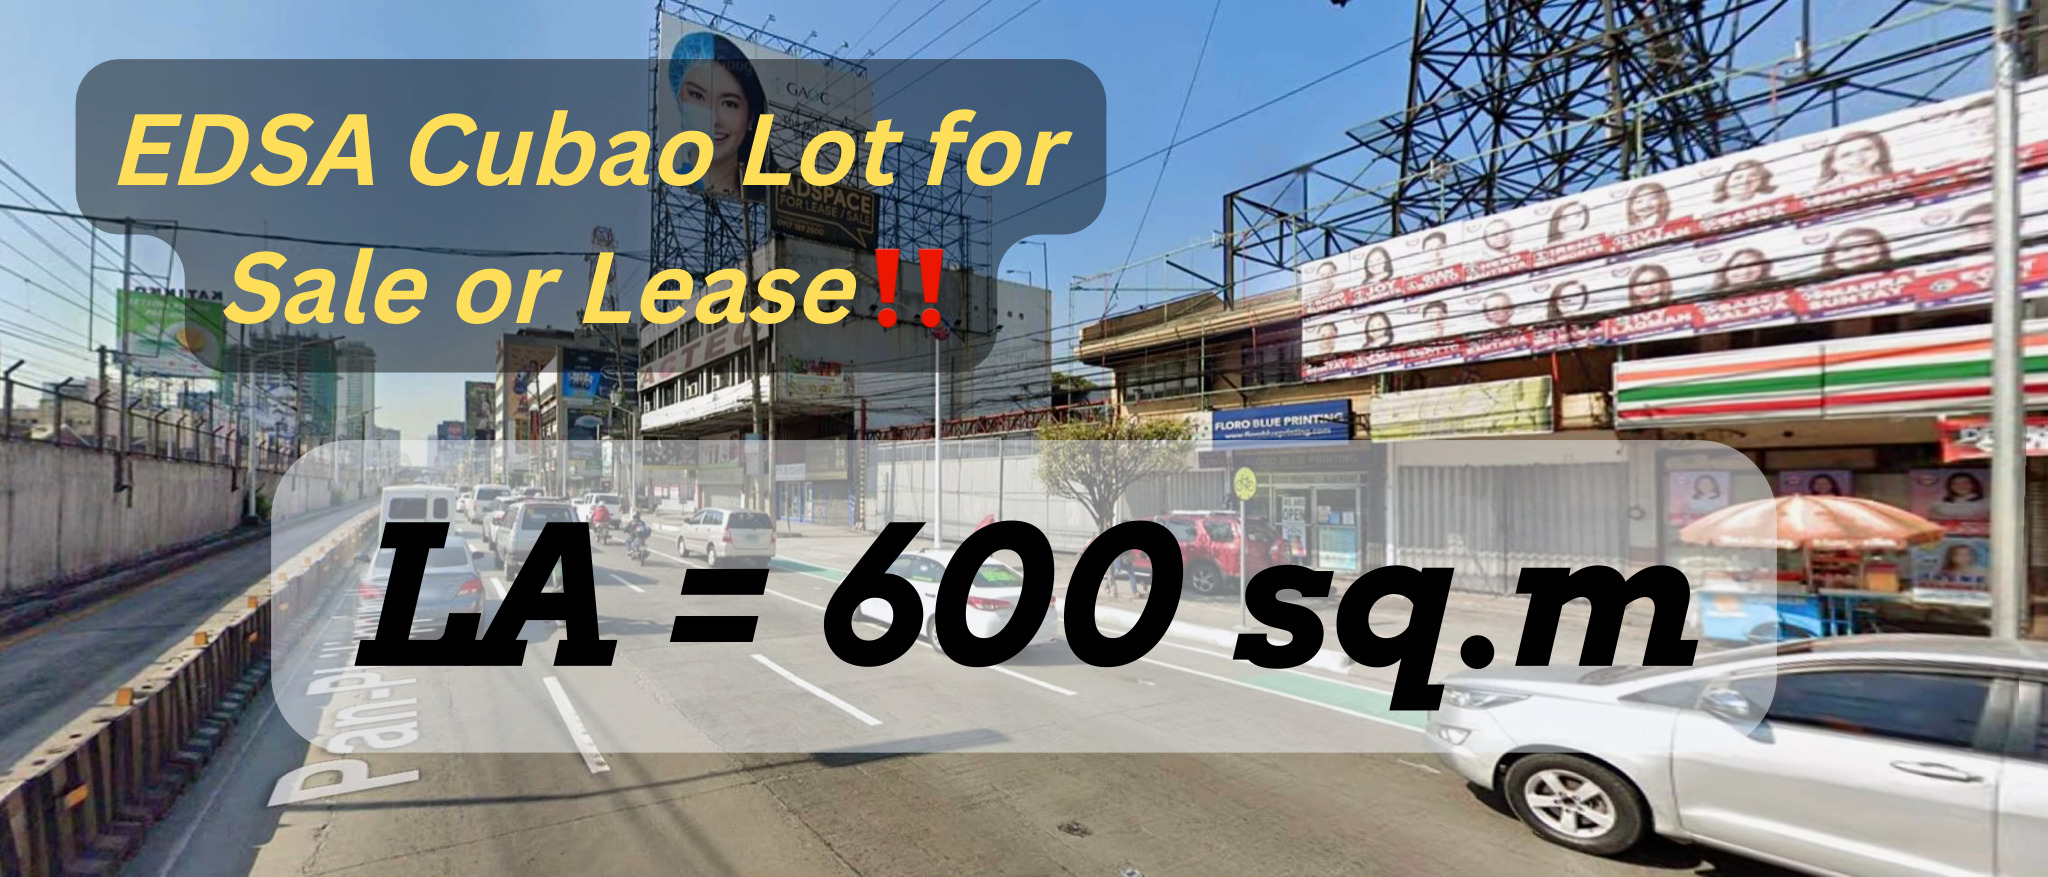 EDSA Cubao, Quezon City – Lot for Sale or Lease‼️